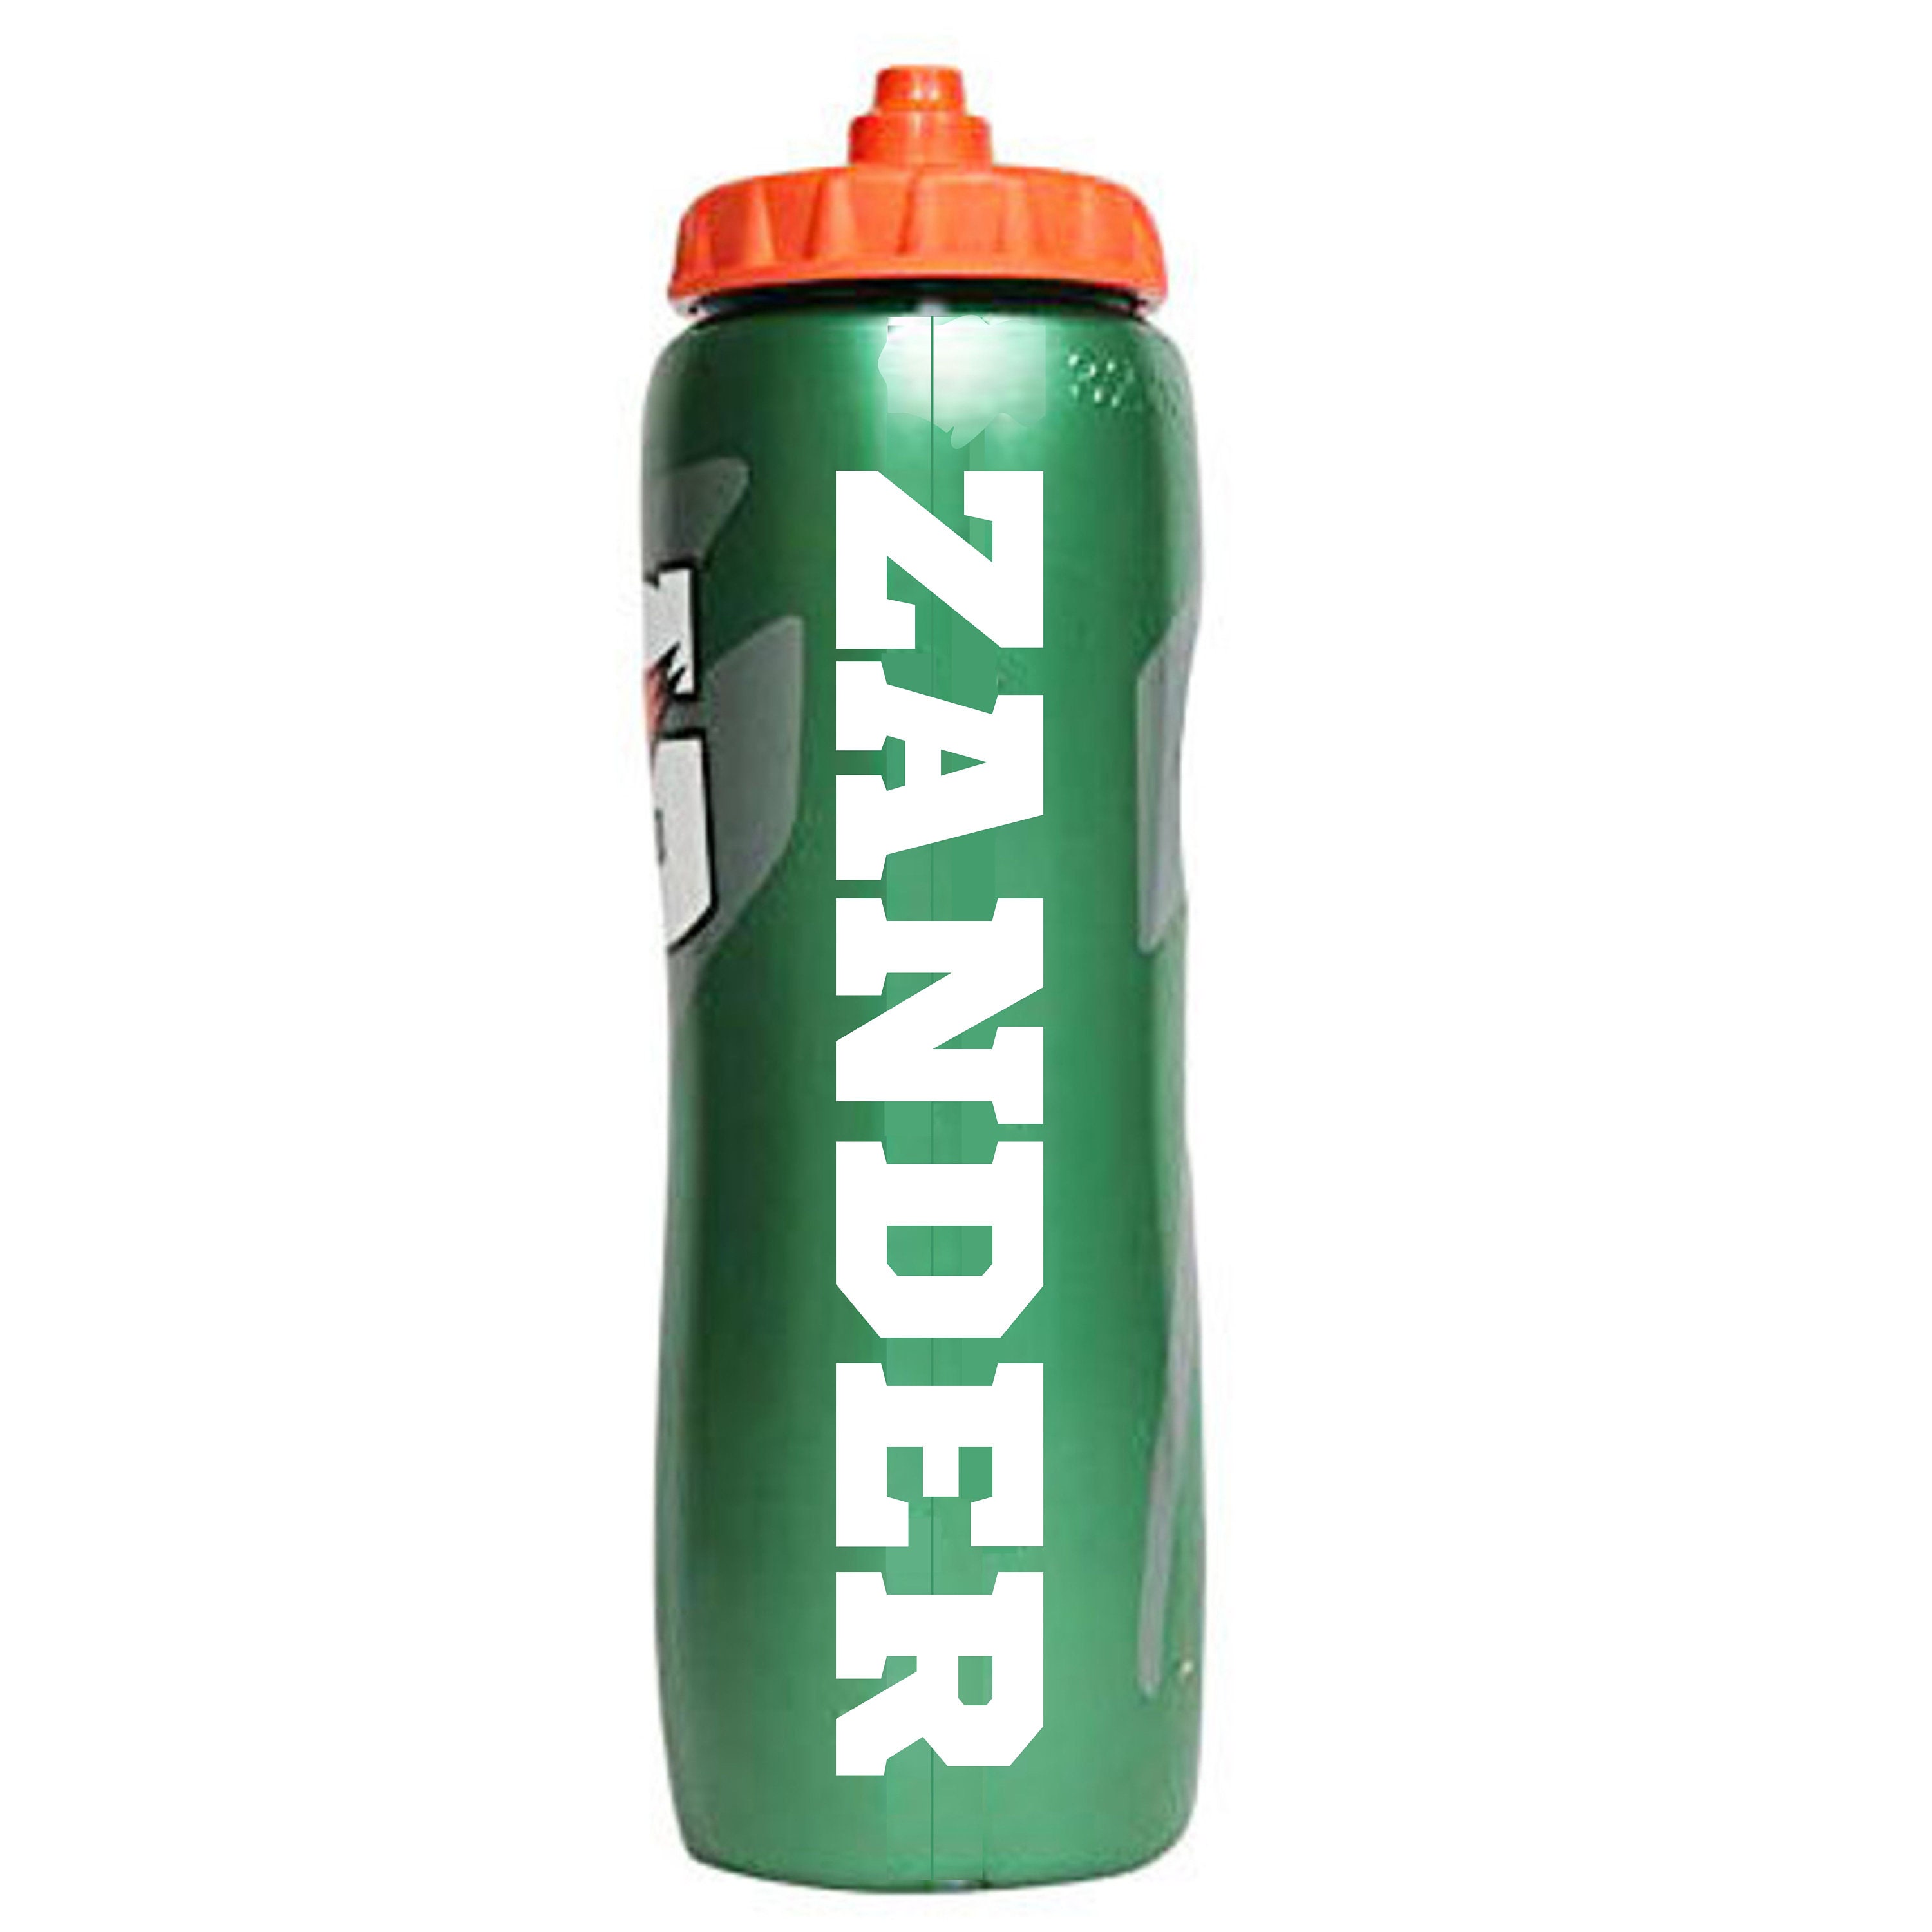 Hydrate or Diedrate - Slim 20oz Water Bottle